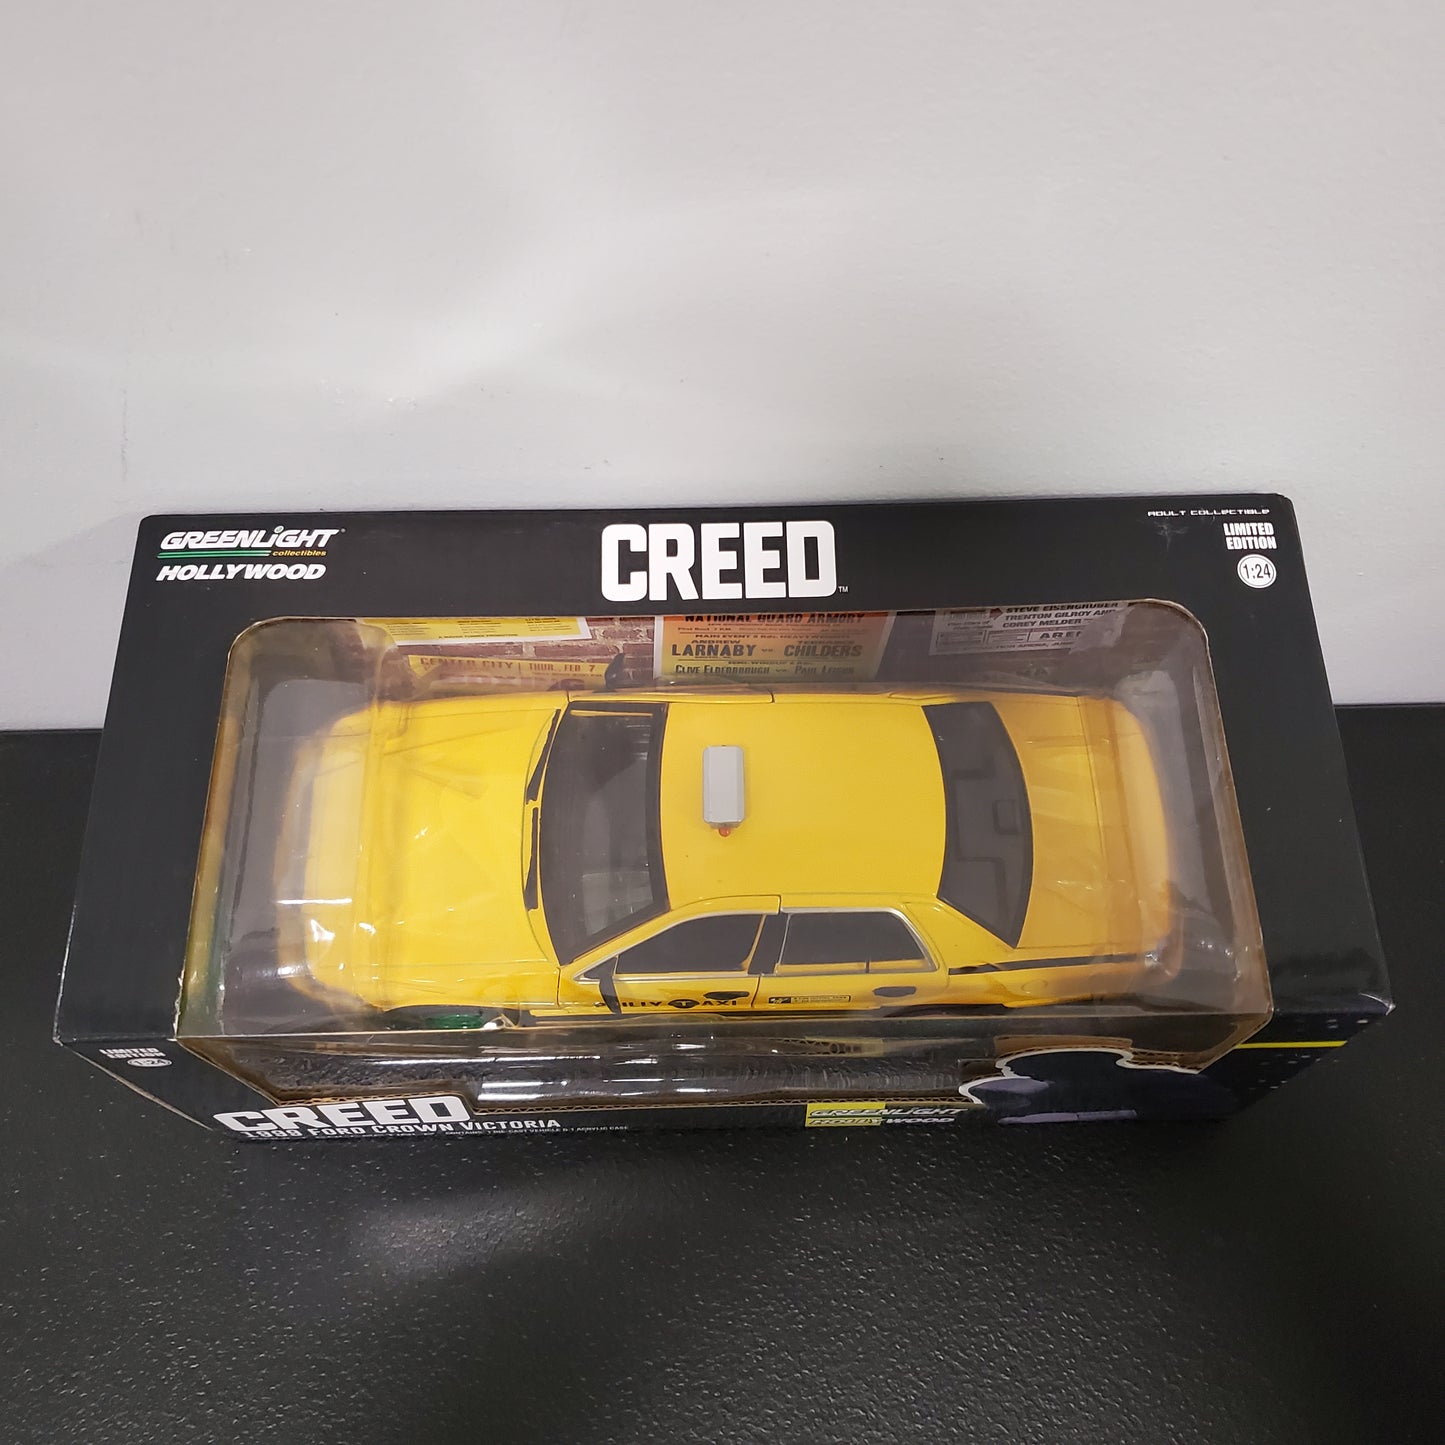 Greenlight Creed 1999 Ford Crown Victoria *CHASE* Greenie 1:24 Edición Limitada Ruedas Verdes